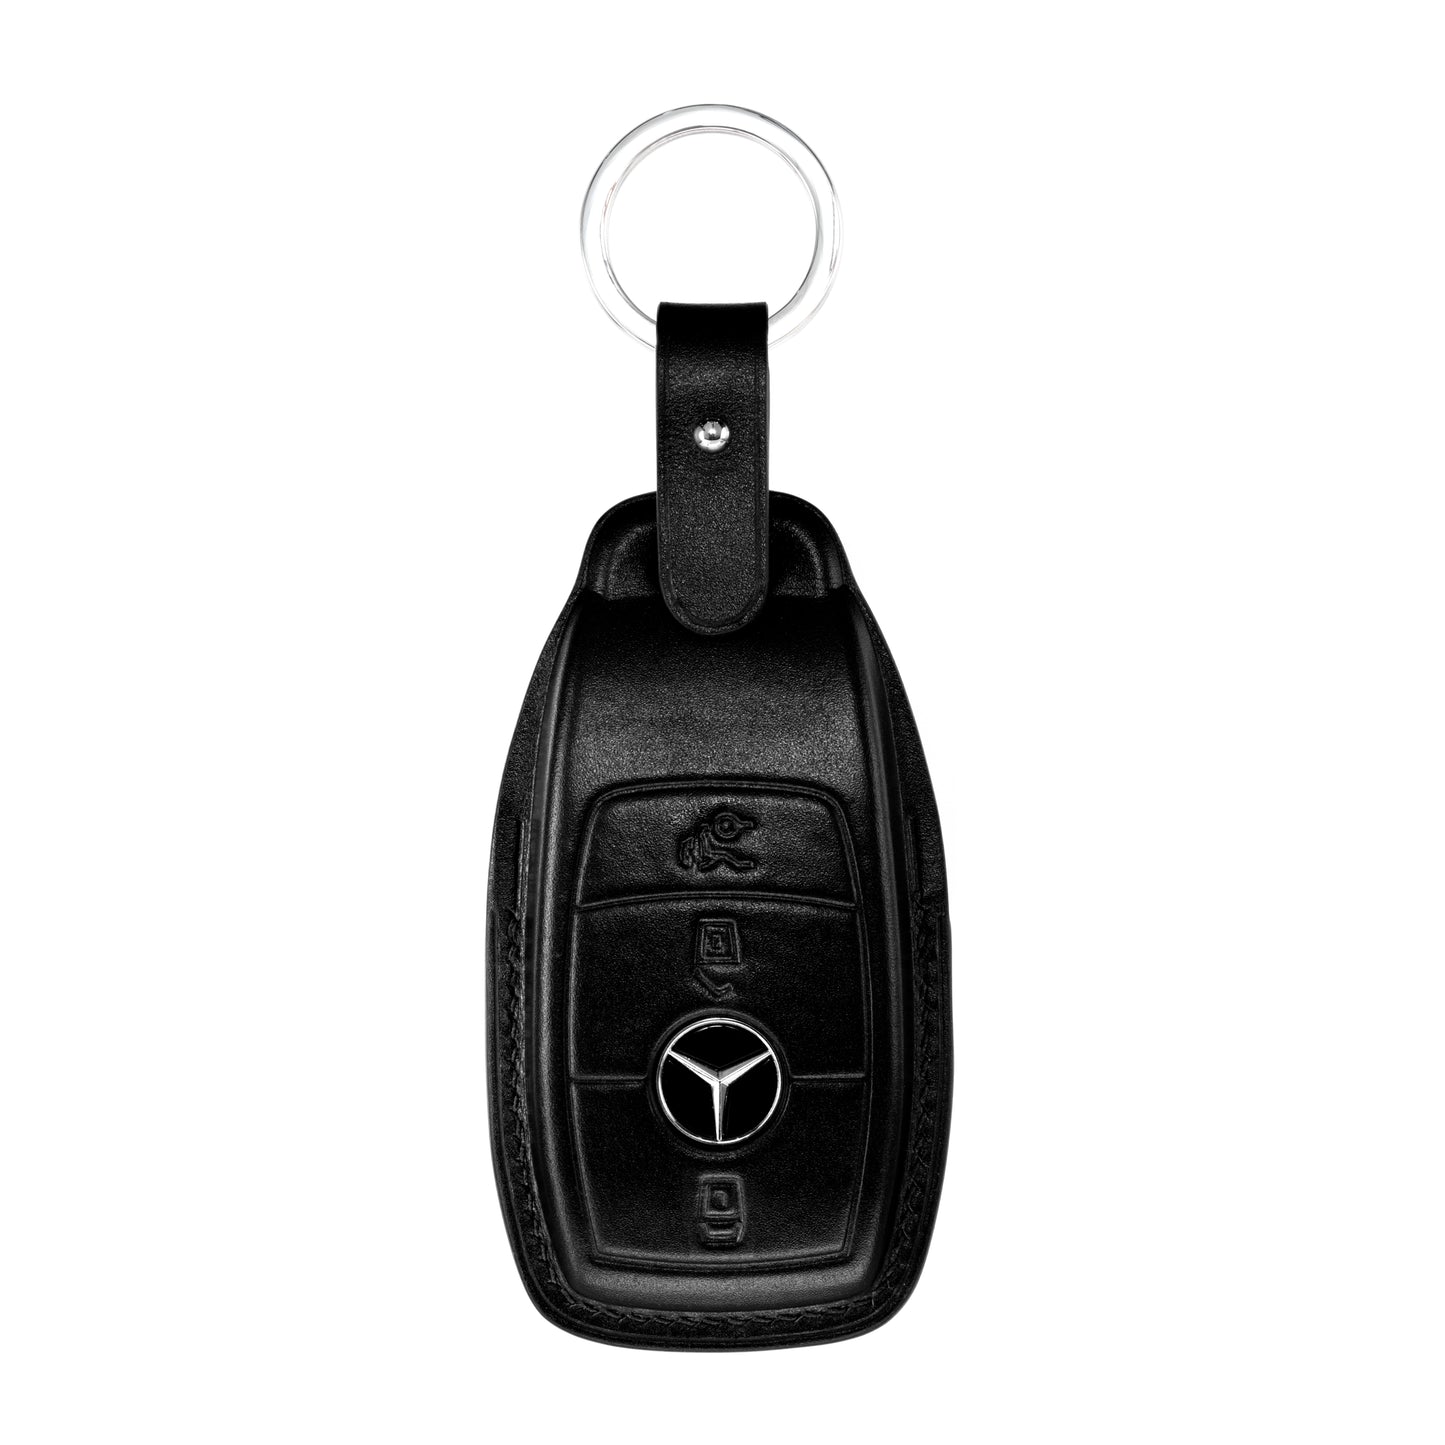 Mercedes E Class Key Fob Cover in Black Nappa